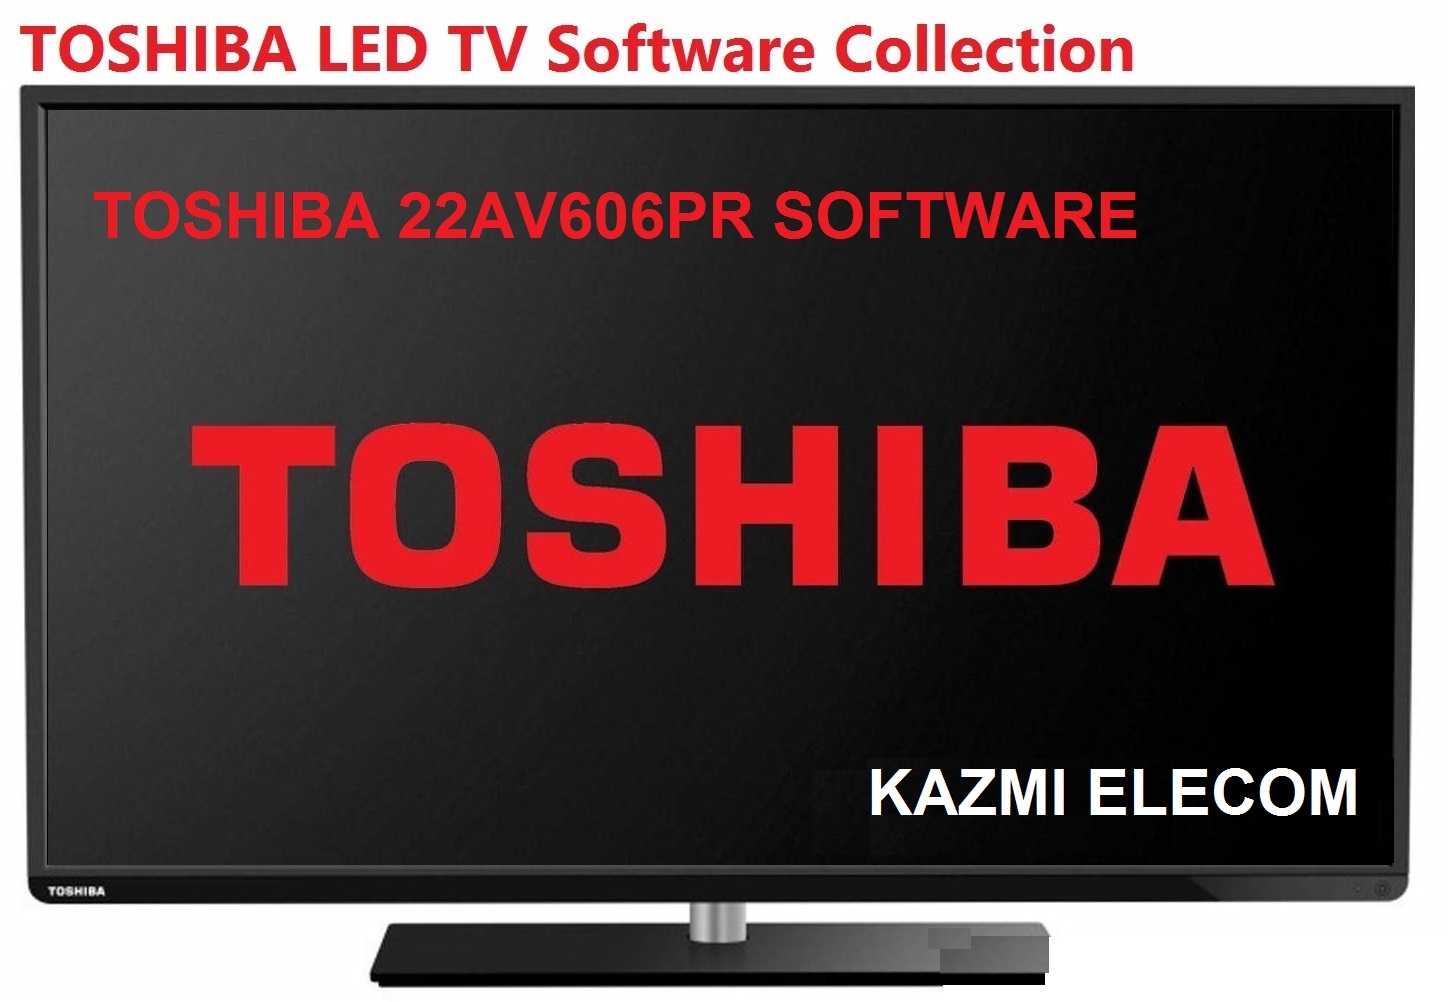 Toshiba 22Av606Pr